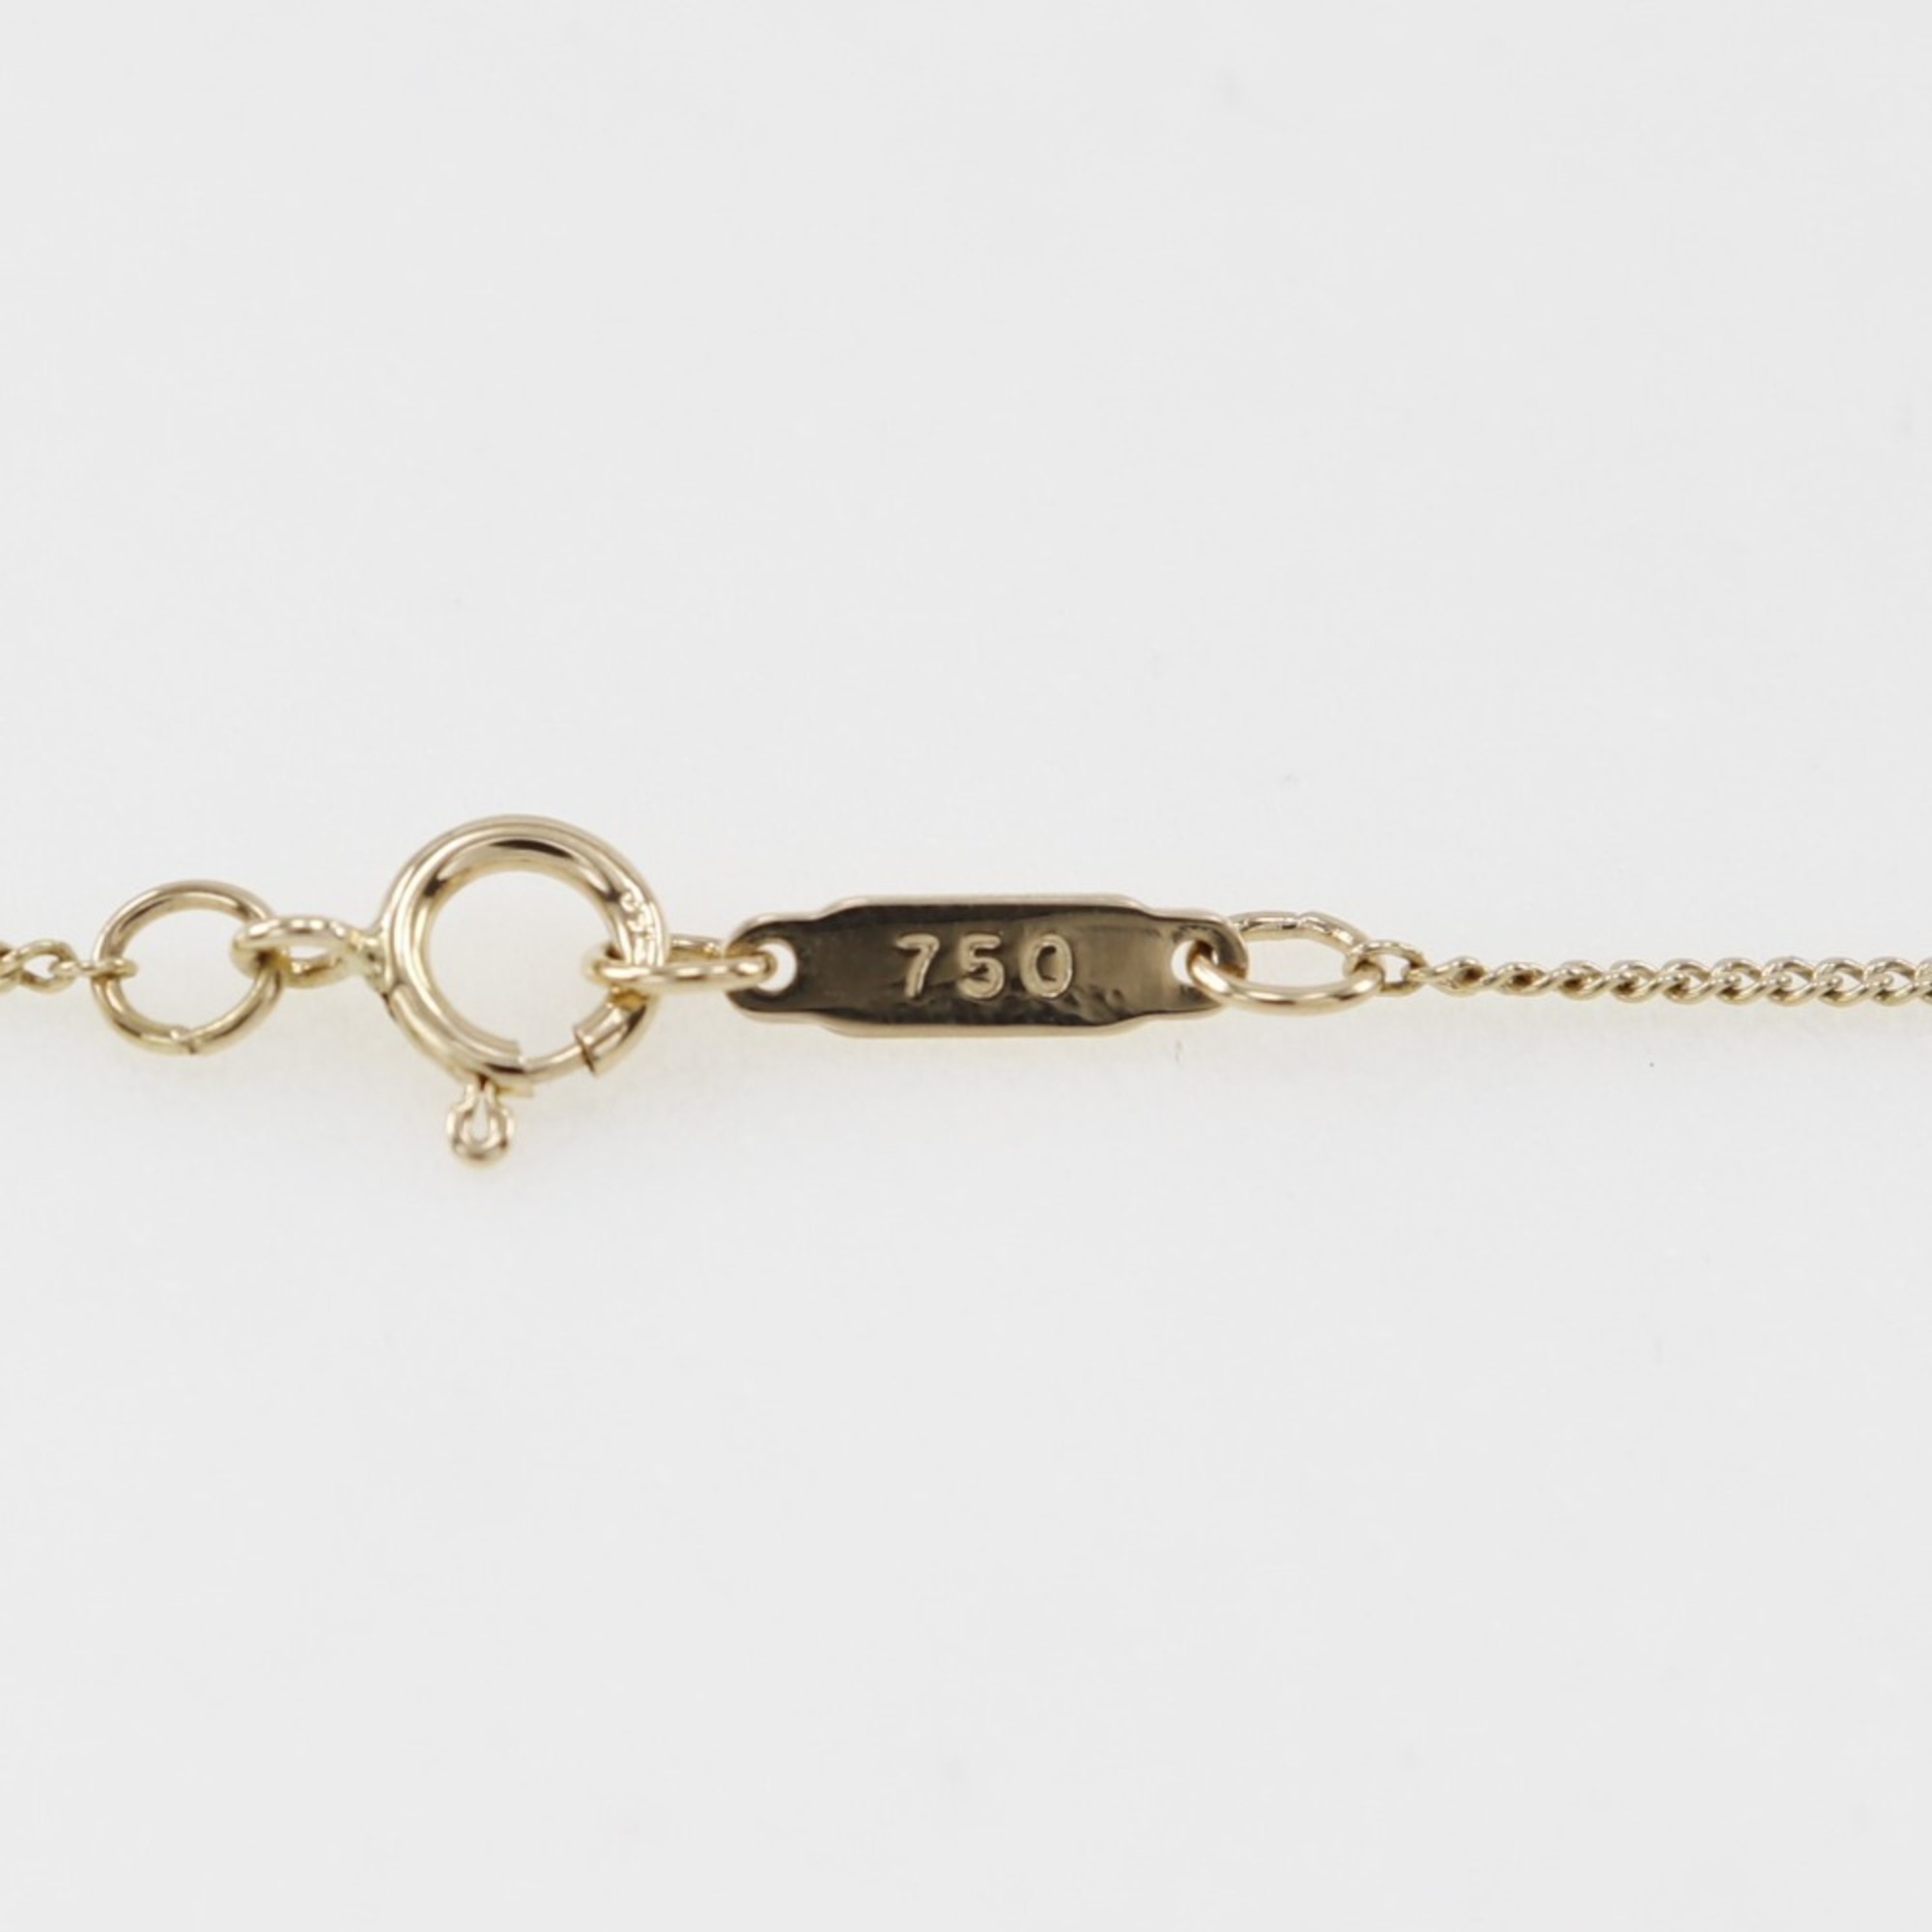 Tiffany & Co. Chain Cross Heart Necklace, K18 Yellow Gold x Rhodochrosite, approx. 3.6g, Heart, Women's